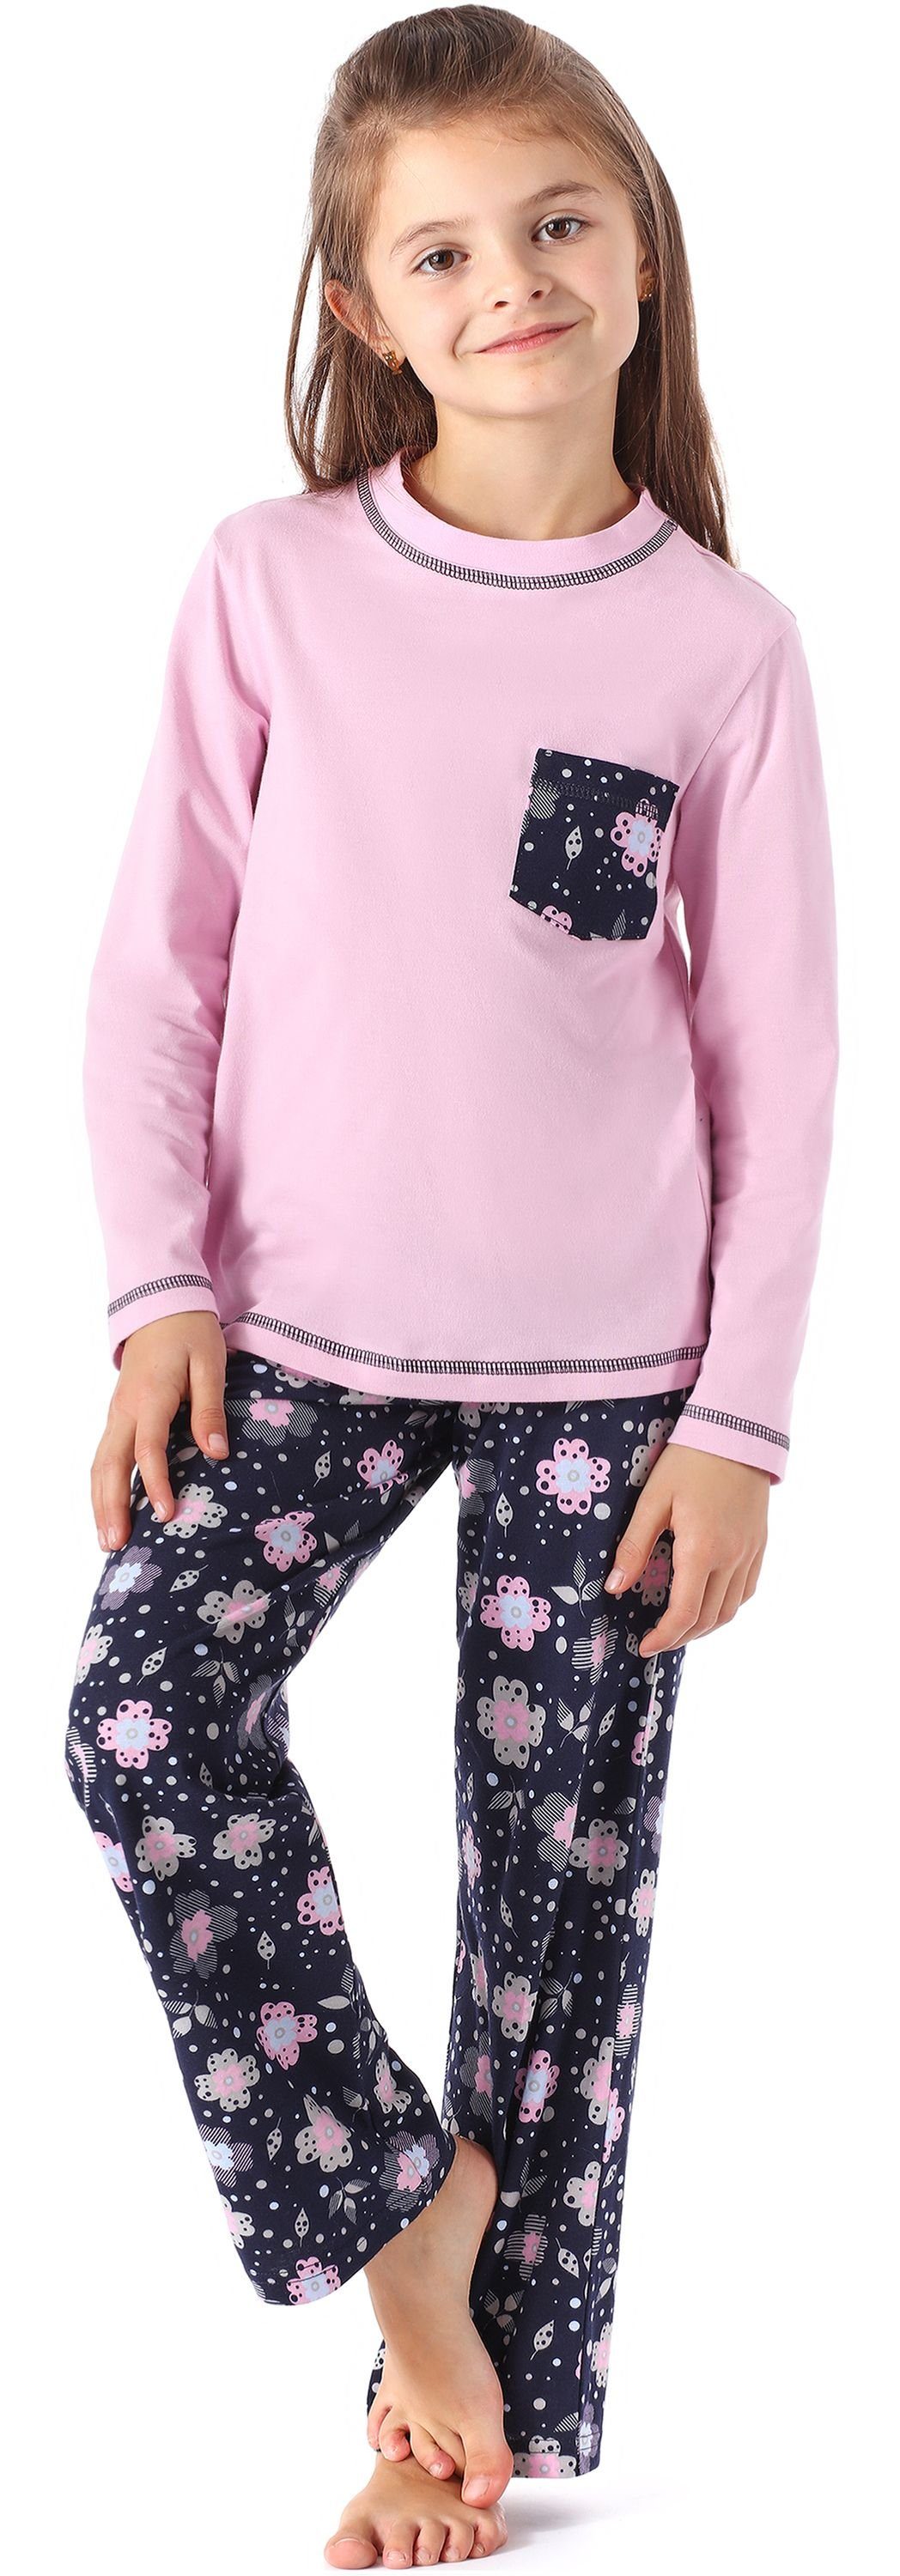 Schlafanzug MS10-215 Mädchen Style Merry Schlafanzug Rosa/Blumen